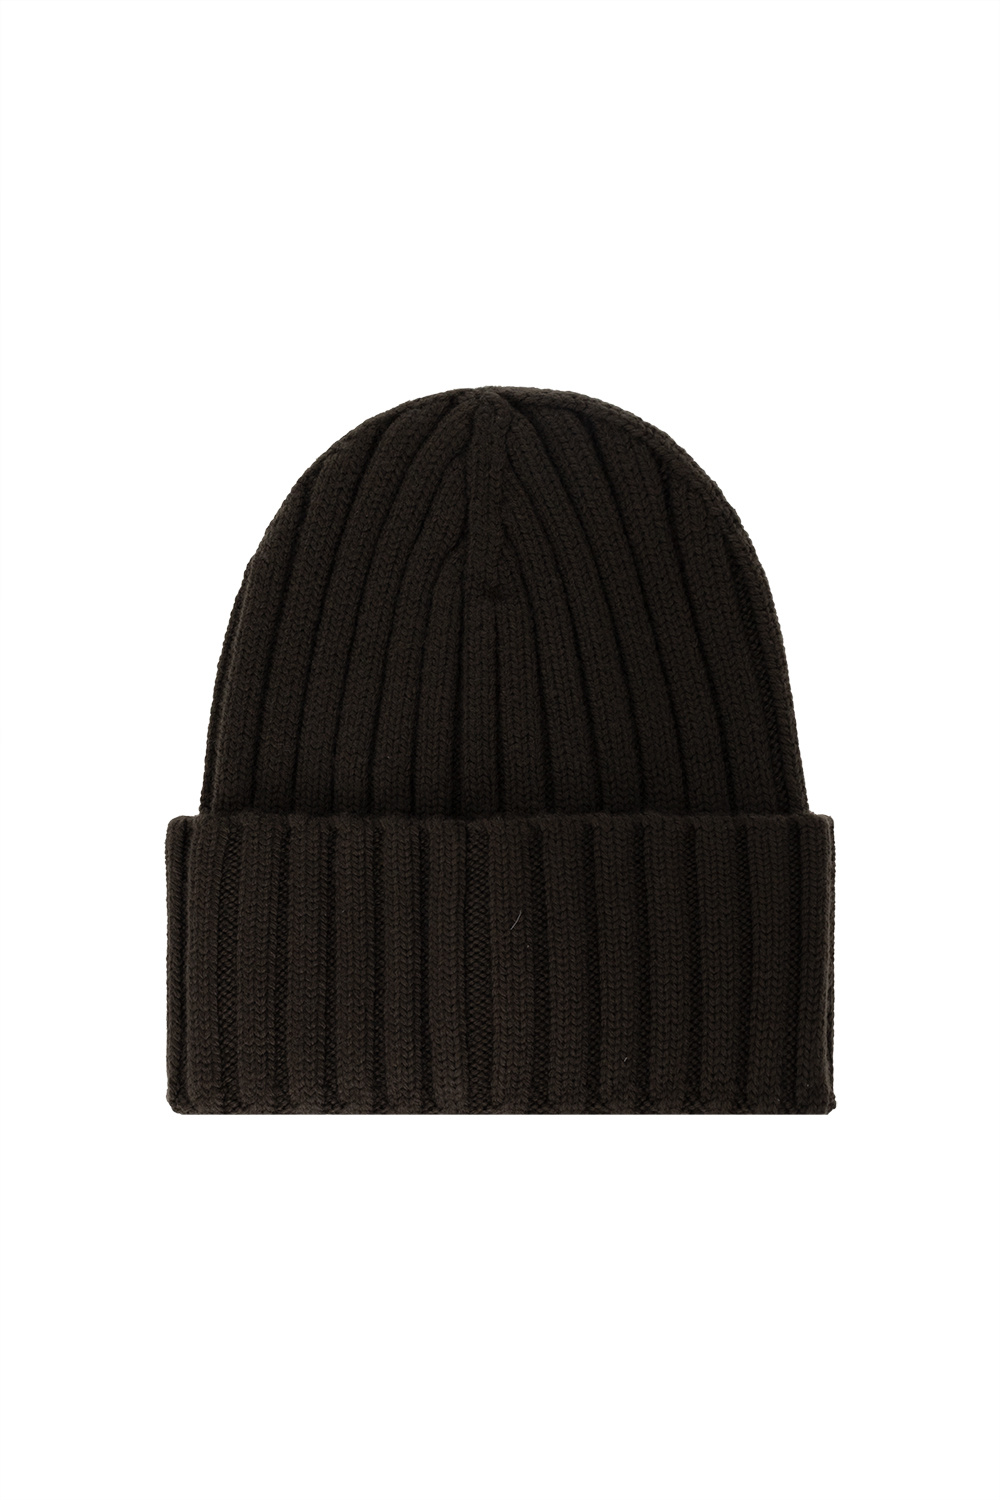 Moncler prada black textured hat